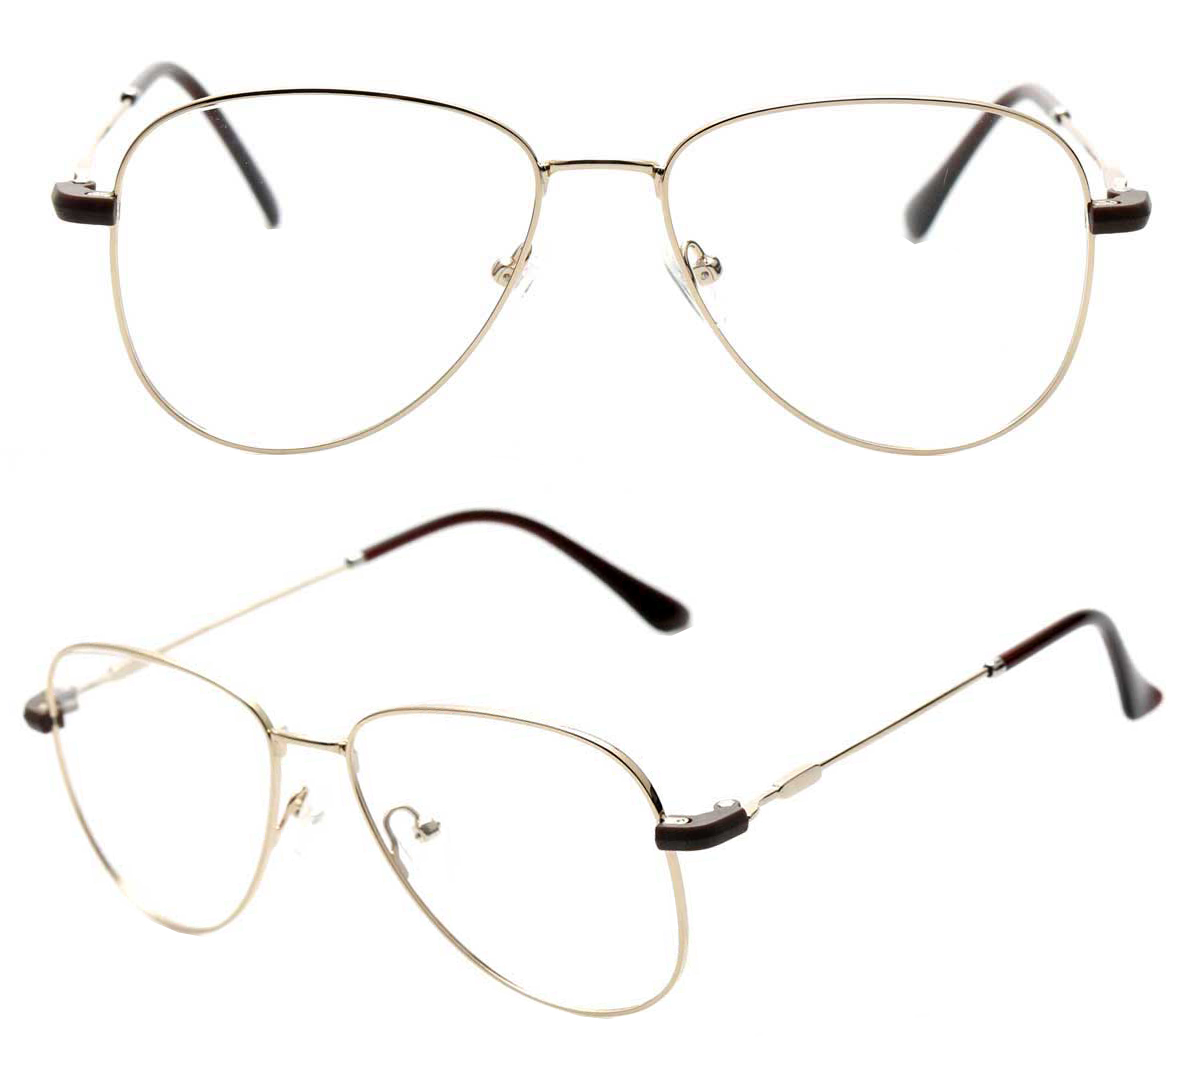 Sunglass Clips For Glasses Manufacturer, Oem Odm Clip On Eyewear Frames